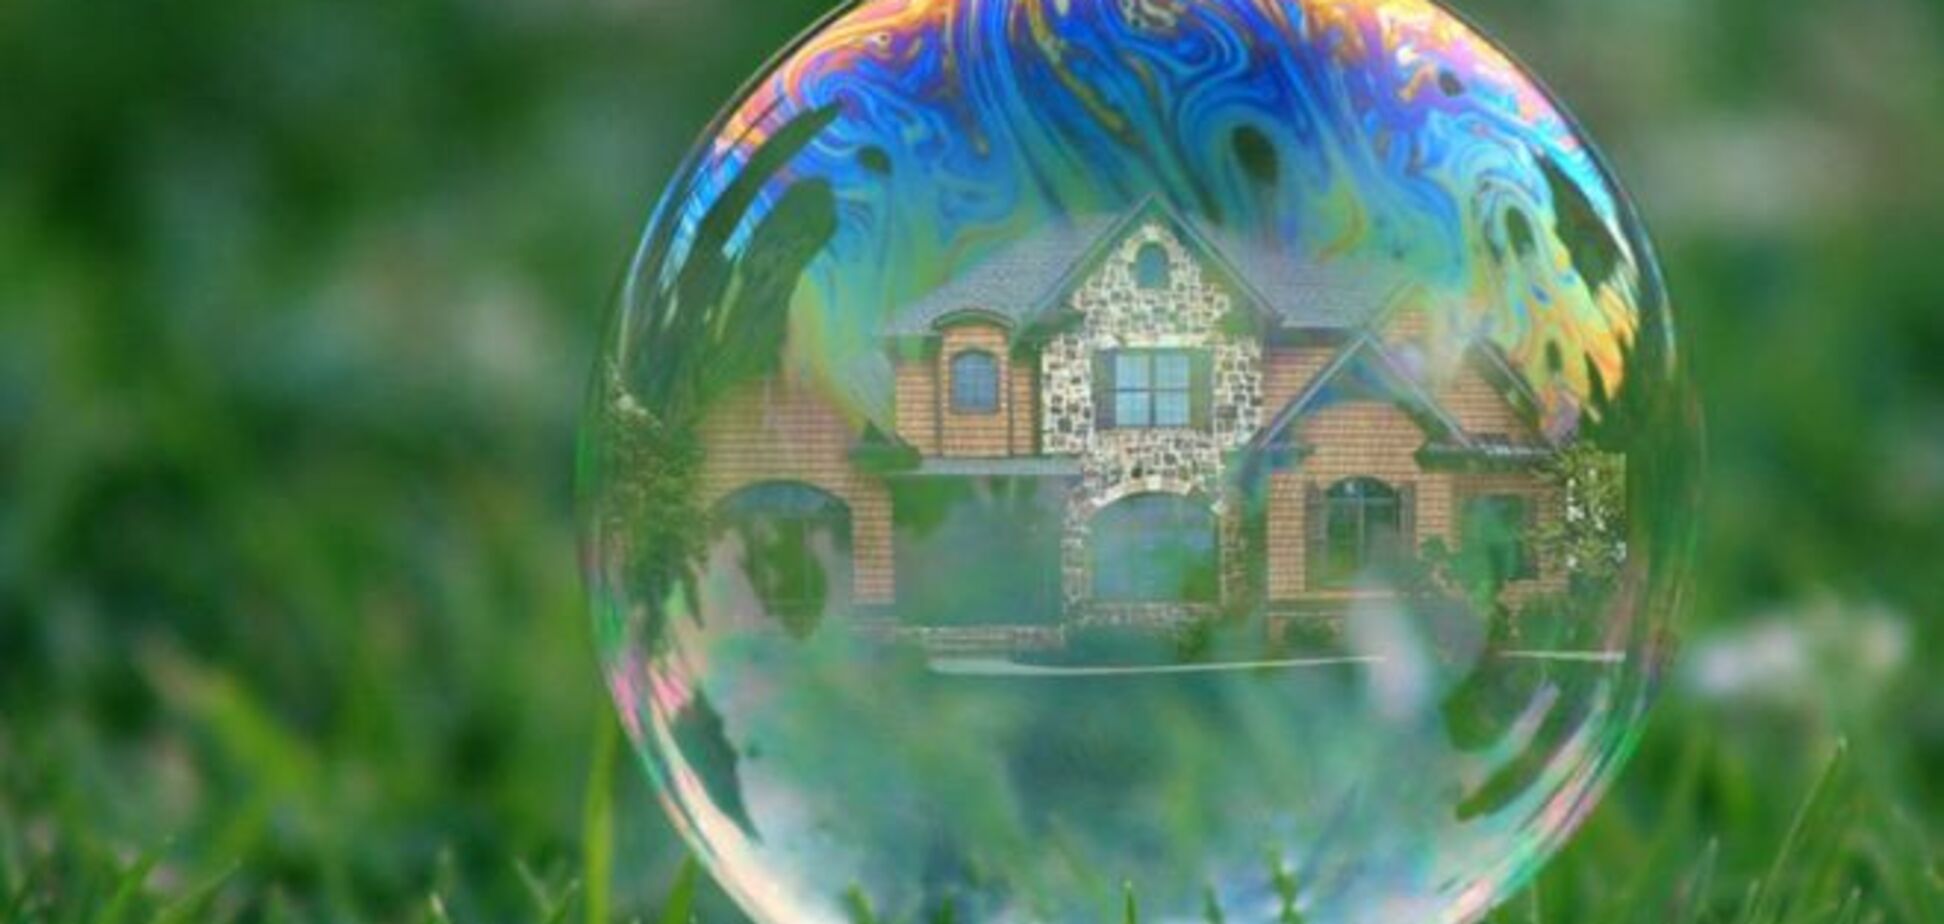 Пузырь на рынке недвижимости Украины готовится лопнуть